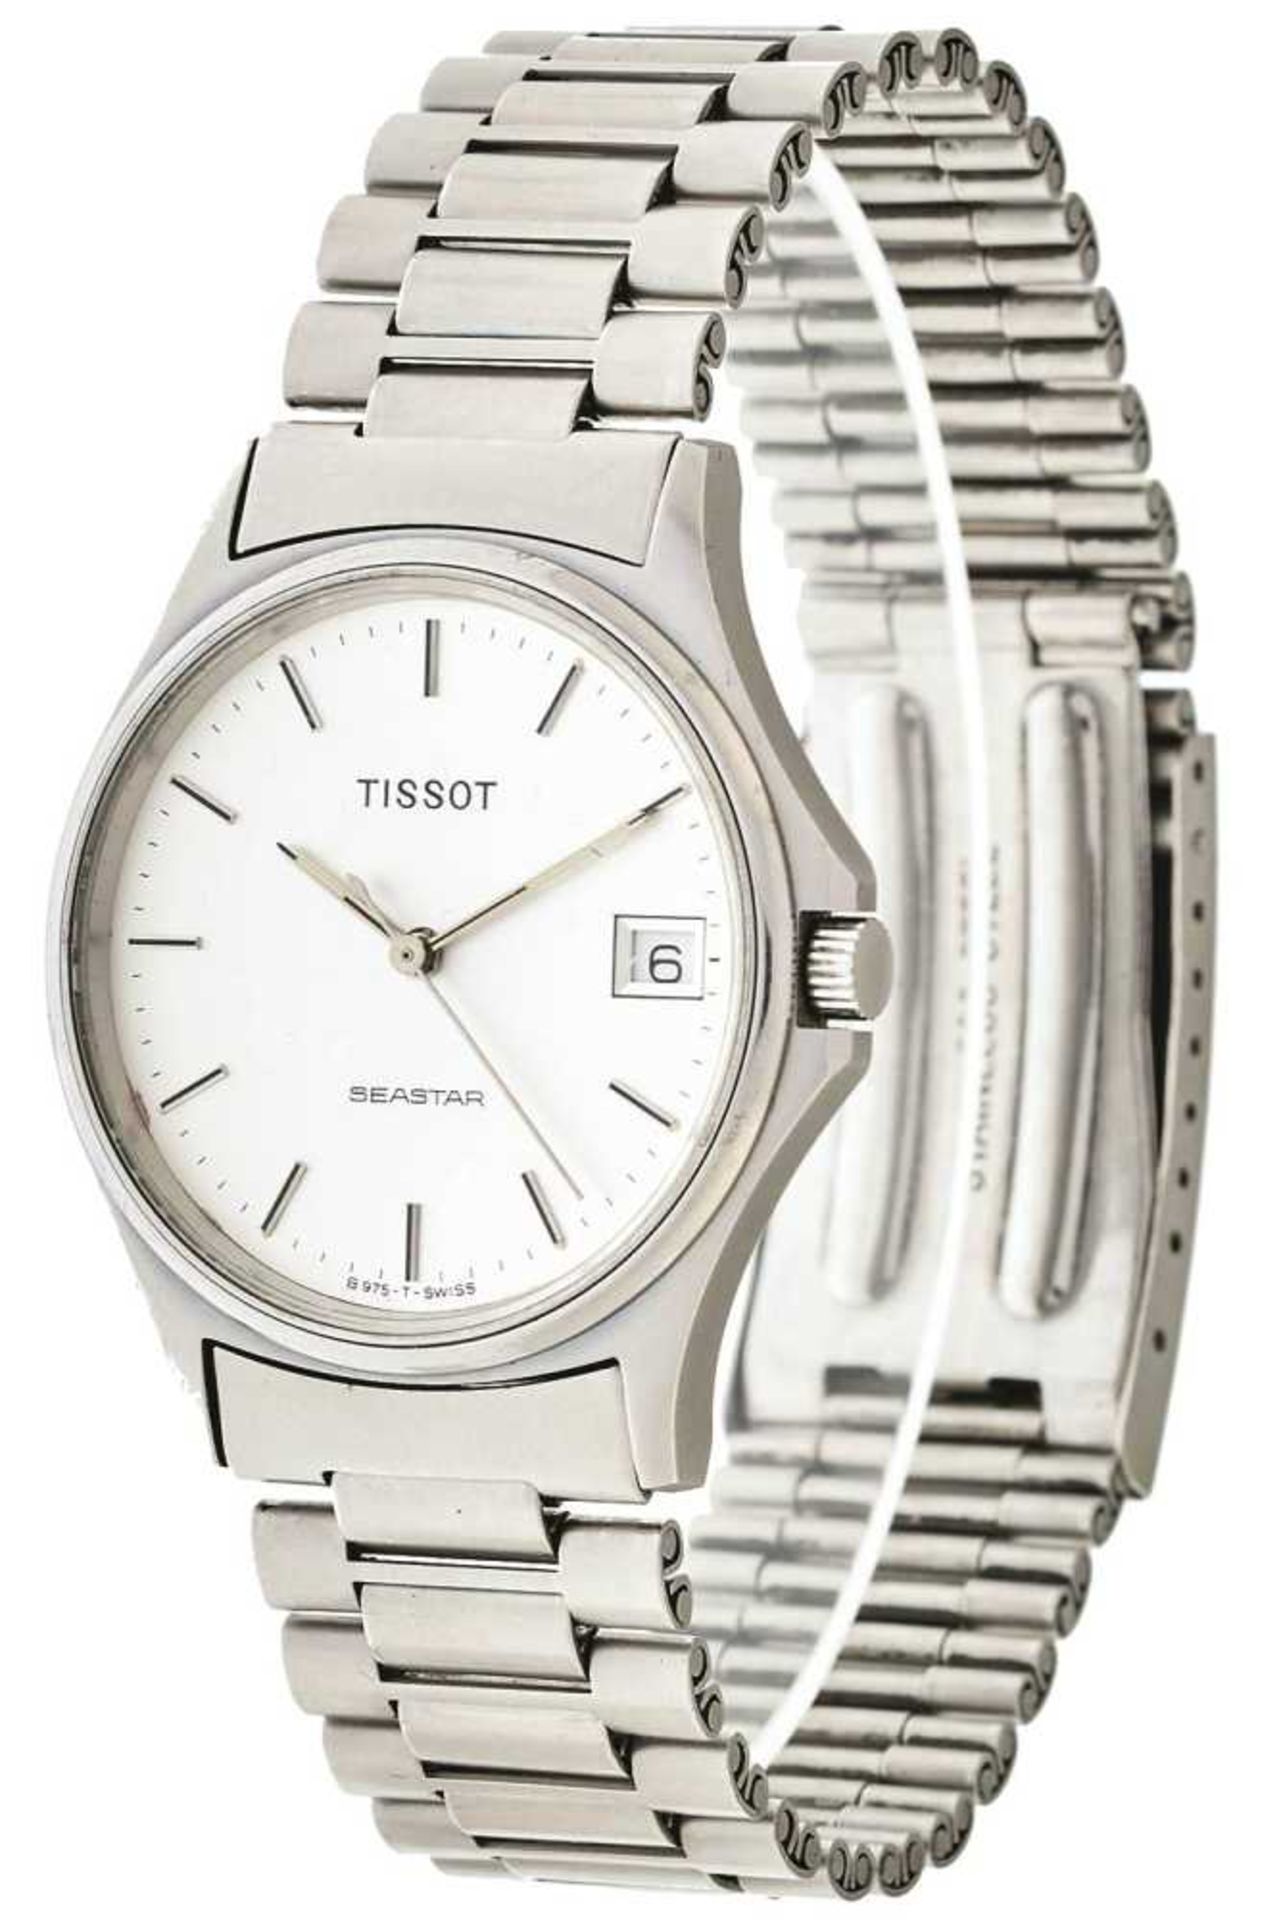 Tissot Seastar Herren Armbanduhr. Ca. 33mm, Edelstahl, Quarz. Silberfarbenes Ziffernblatt mit fluore